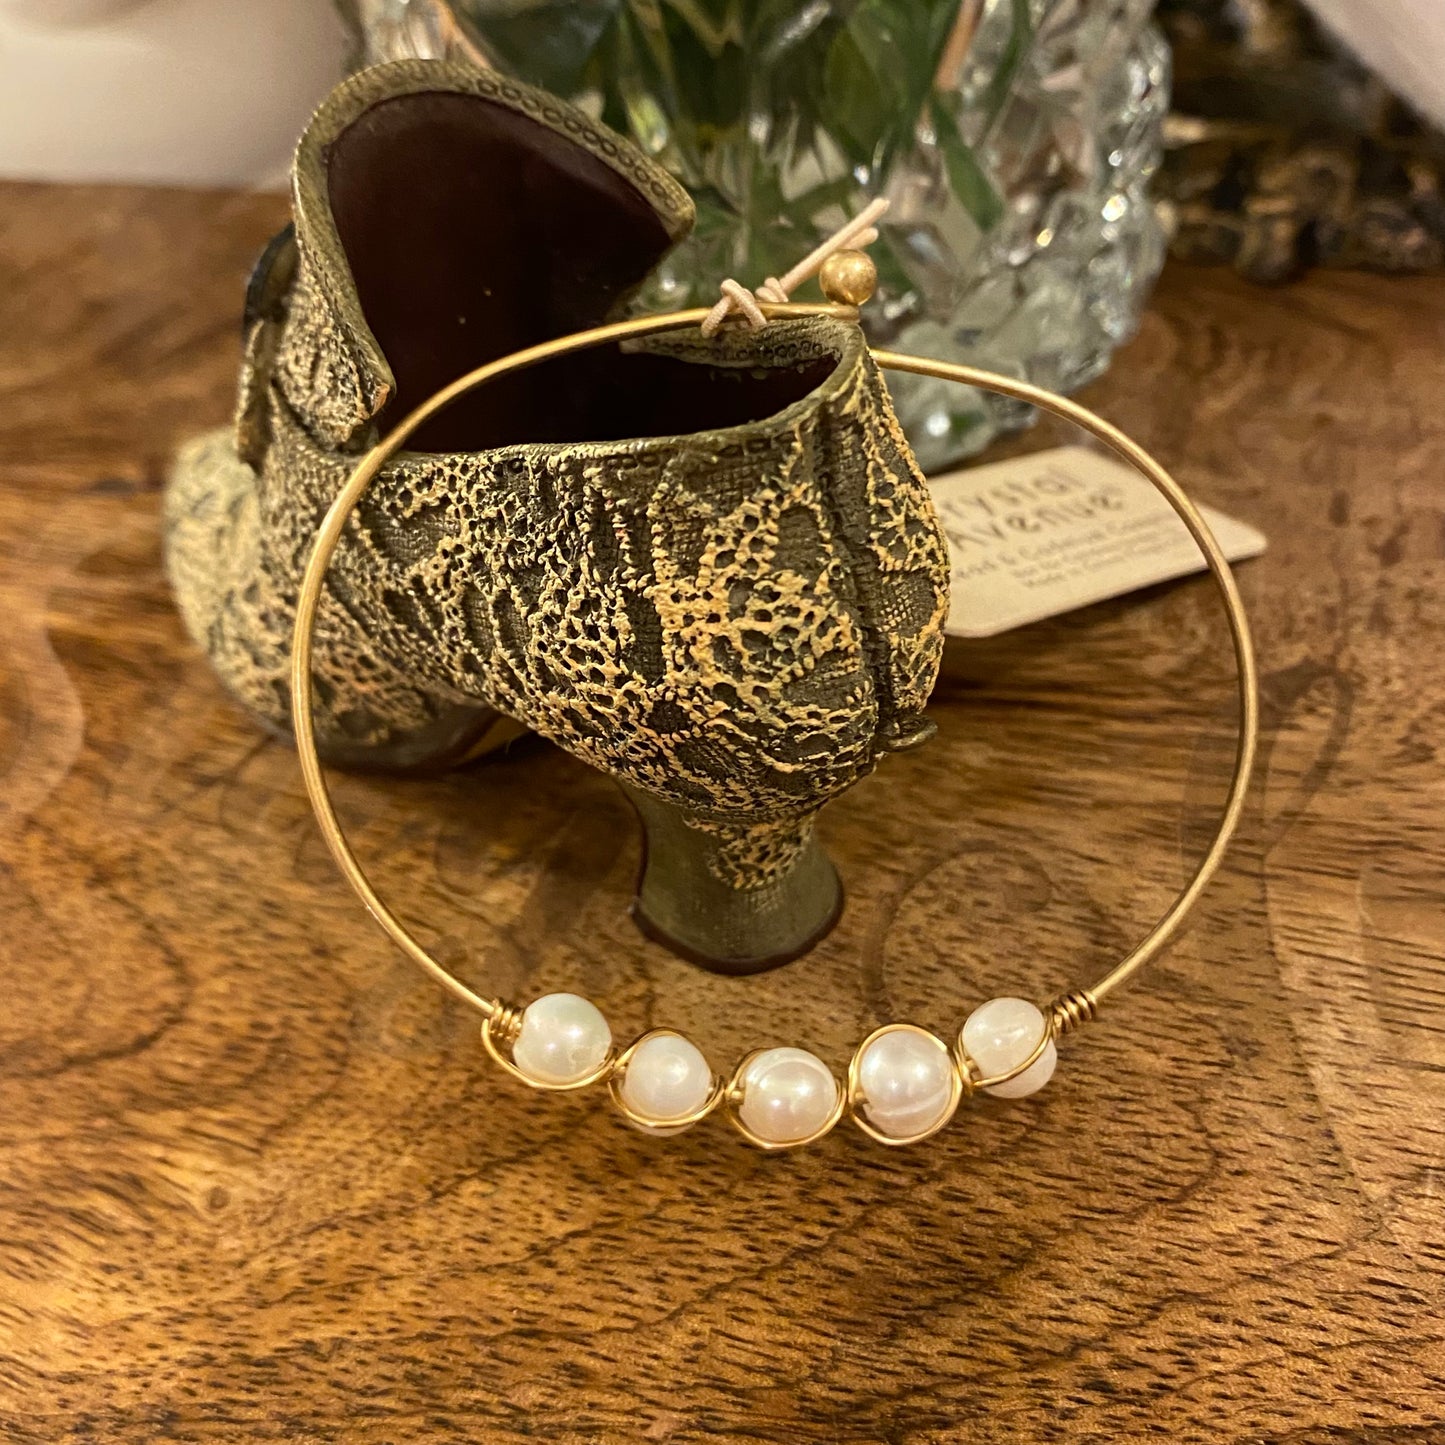 Bracelets - Ivory Pearl Wire Bangle Bracelet